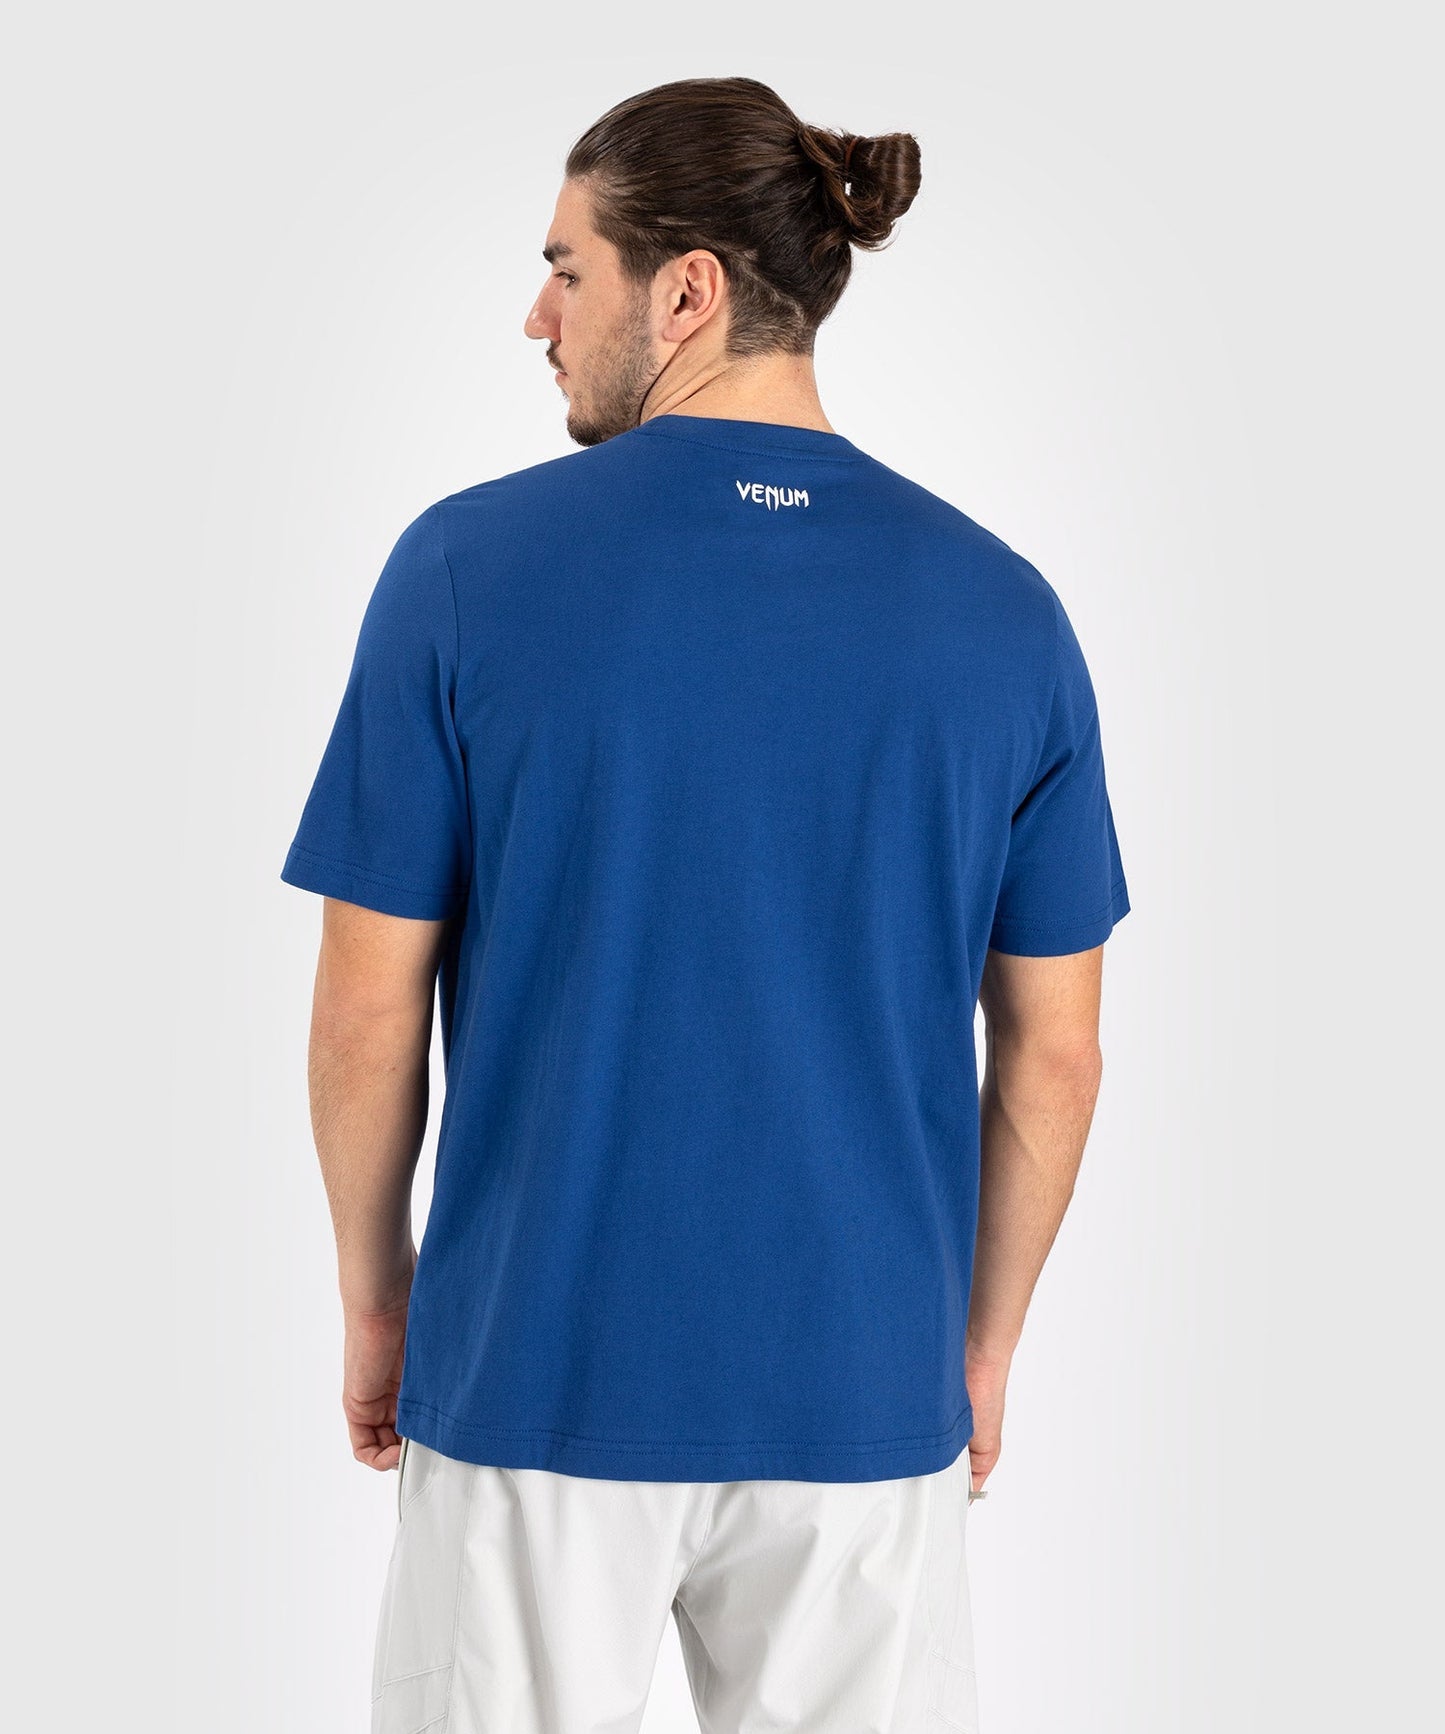 UFC Venum Classic T-shirt - Marineblauw/wit